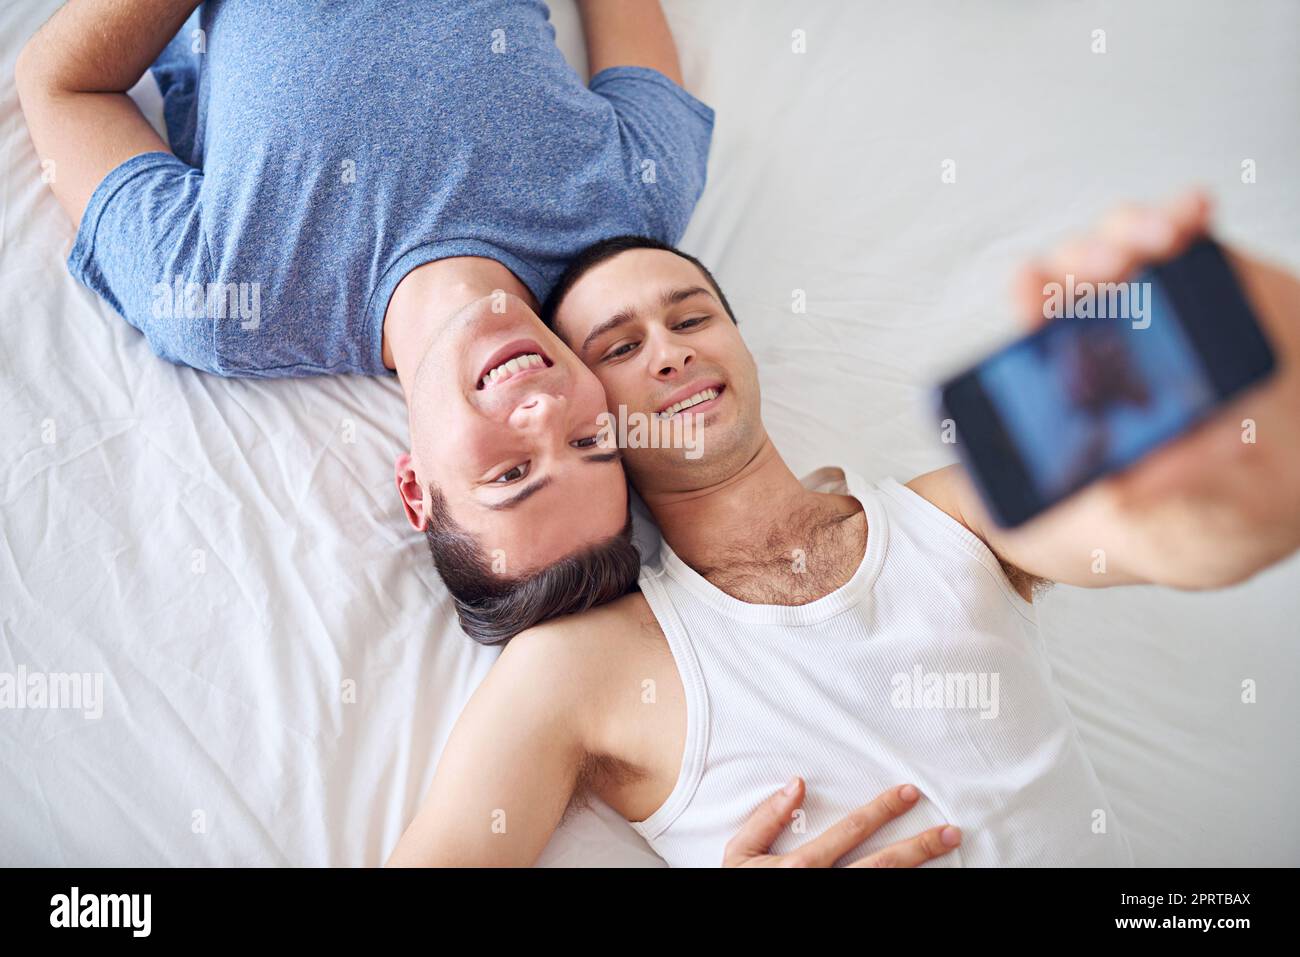 Machen Sie es zu einem Keeper mit einem großen Lächeln. Ein junges schwules Paar, das ein Selfie macht, während es sich im Bett entspannt. Stockfoto